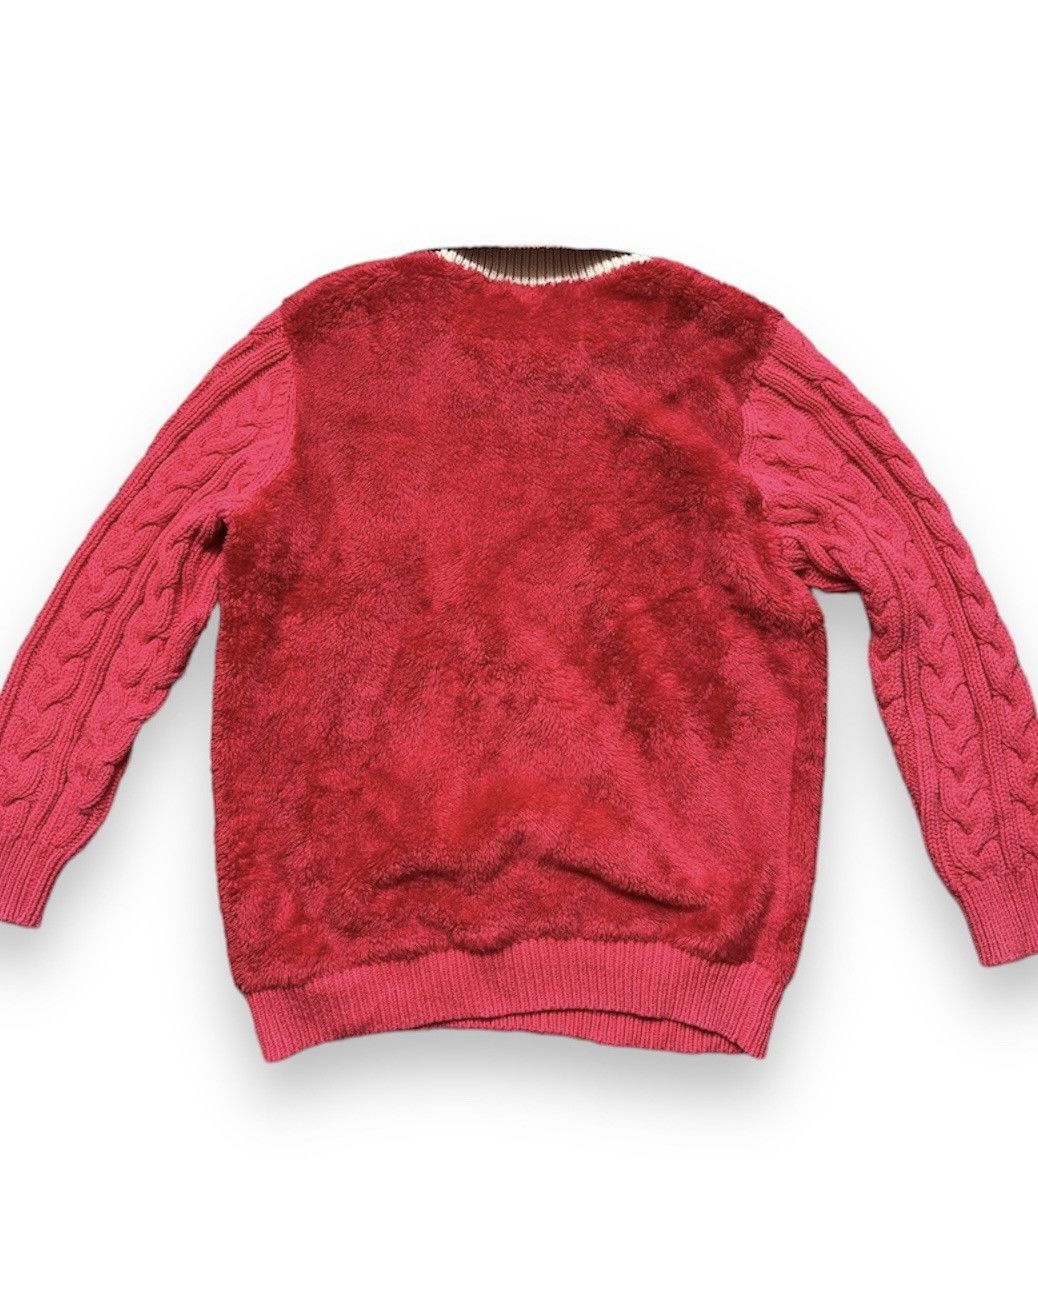 Undercover X Uniqlo Sweater Rare Red Colour - 2